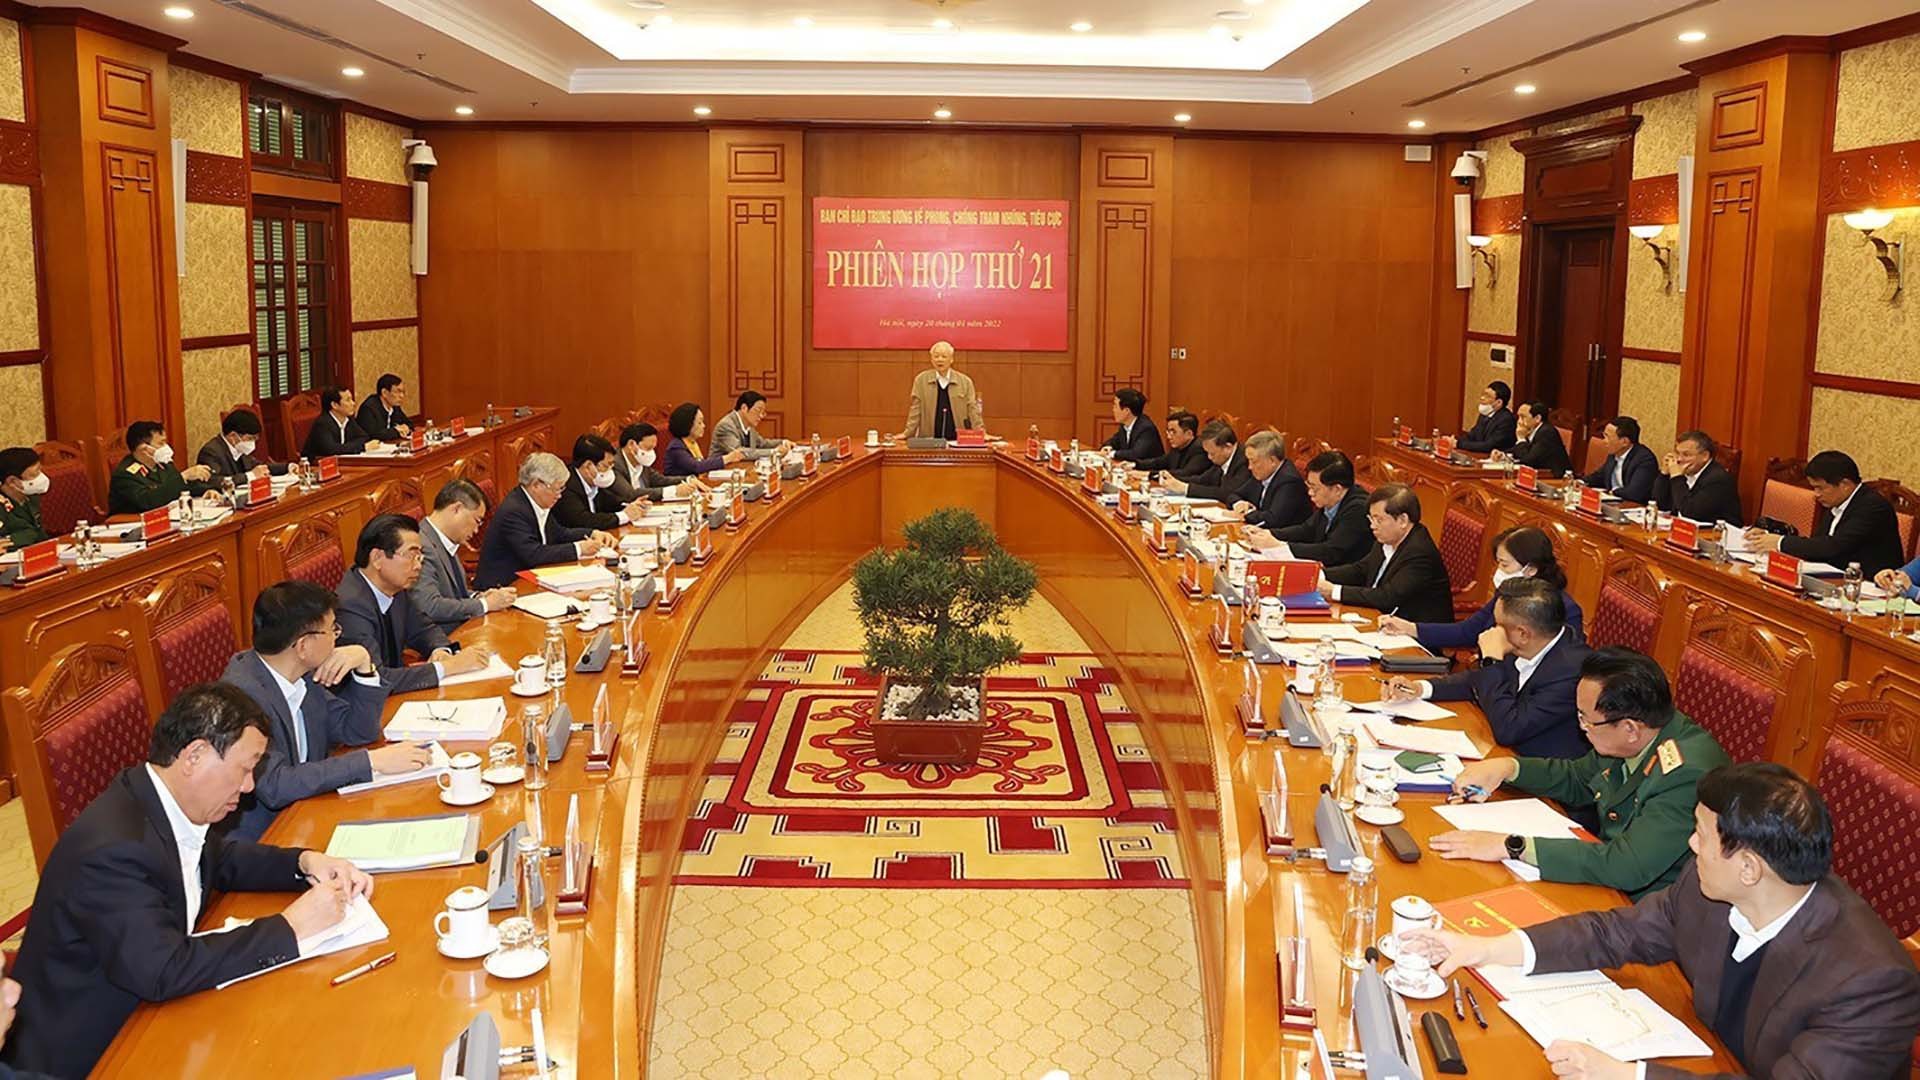 Tổng Bí thư Nguyễn Phú Trọng chủ trì Phiên họp thứ 21 Ban Chỉ đạo Trung ương về phòng, chống tham nhũng, tiêu cực